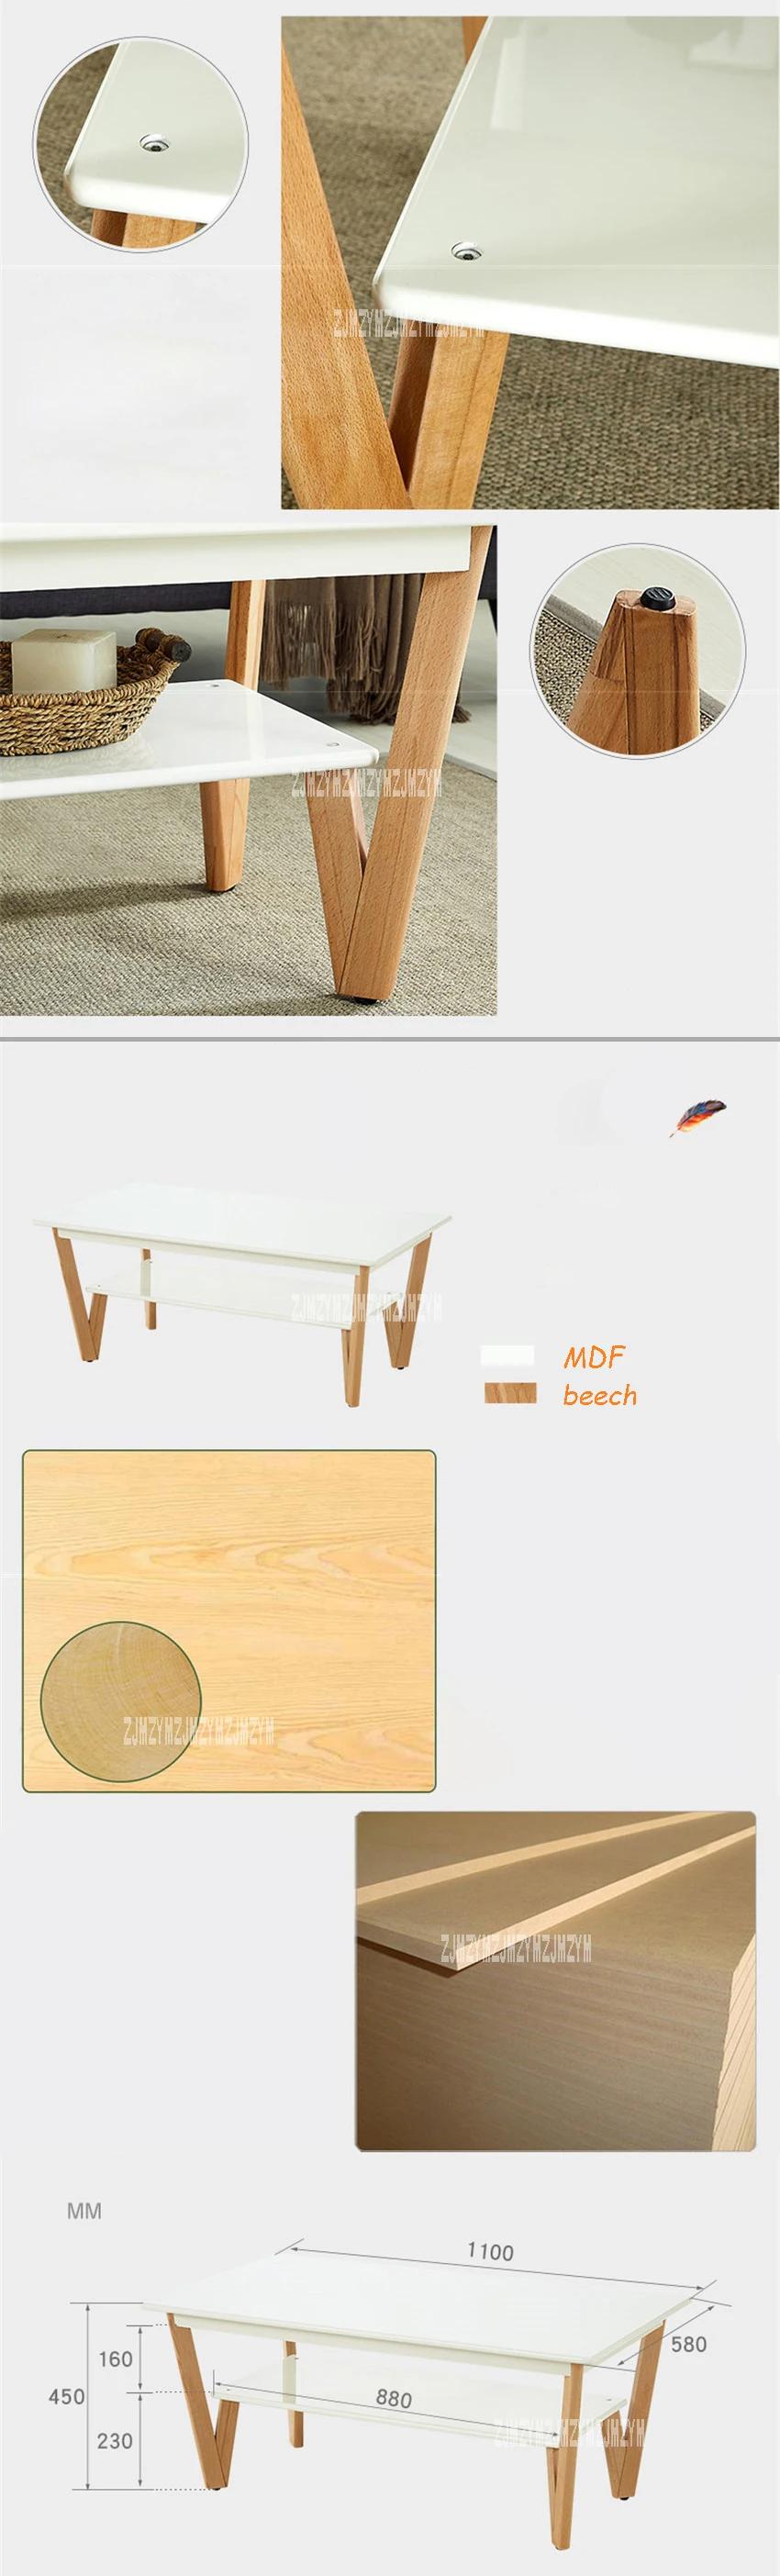 HZY-CJ-0040 домашний мебель, журнальный столик гостиная креативный боковой стол современный простой Противоскользящий торцевой стол цельная деревянная ножка Teapoy